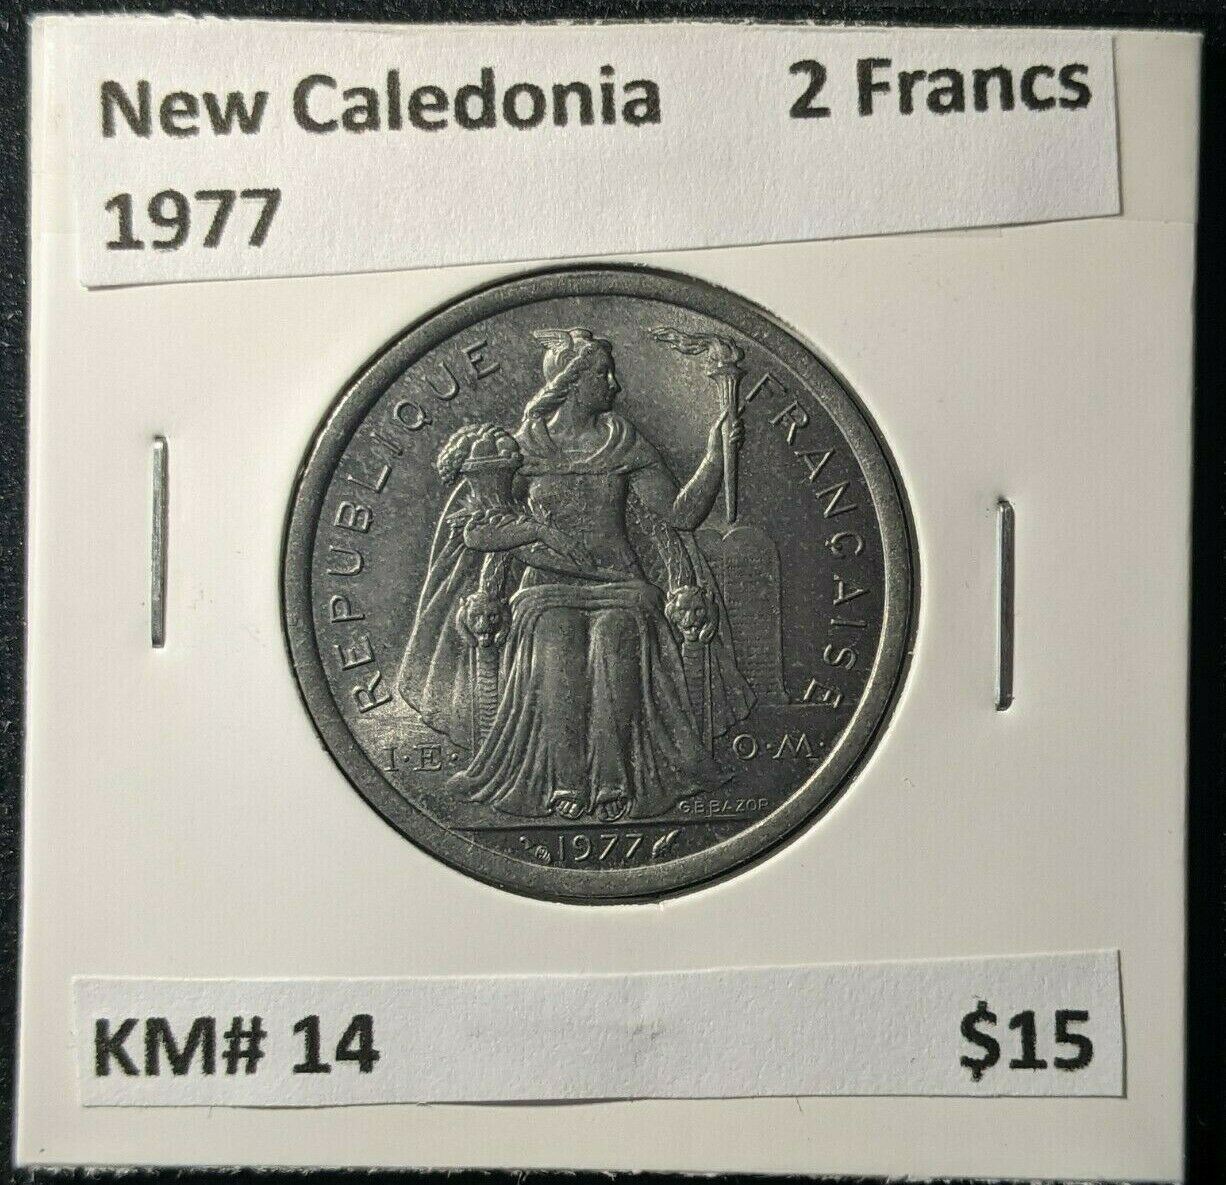 New Caledonia 1977 2 Francs KM# 14 #1297